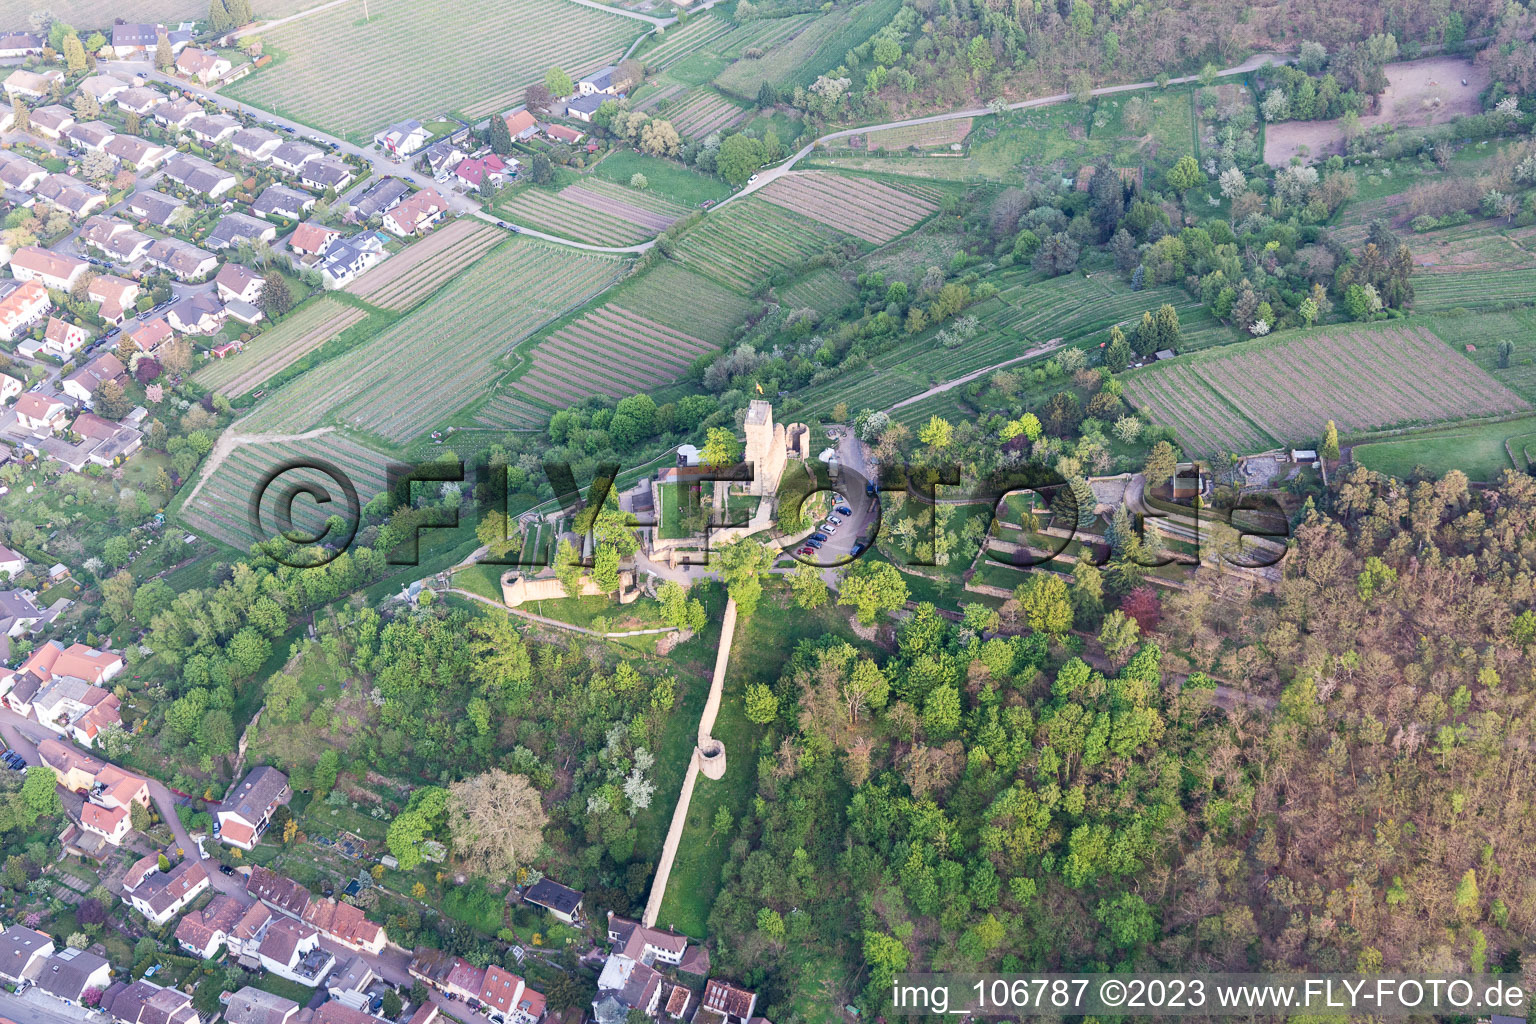 Wachtenburg (ruin “Wachenheim Castle”) in Wachenheim an der Weinstraße in the state Rhineland-Palatinate, Germany seen from above